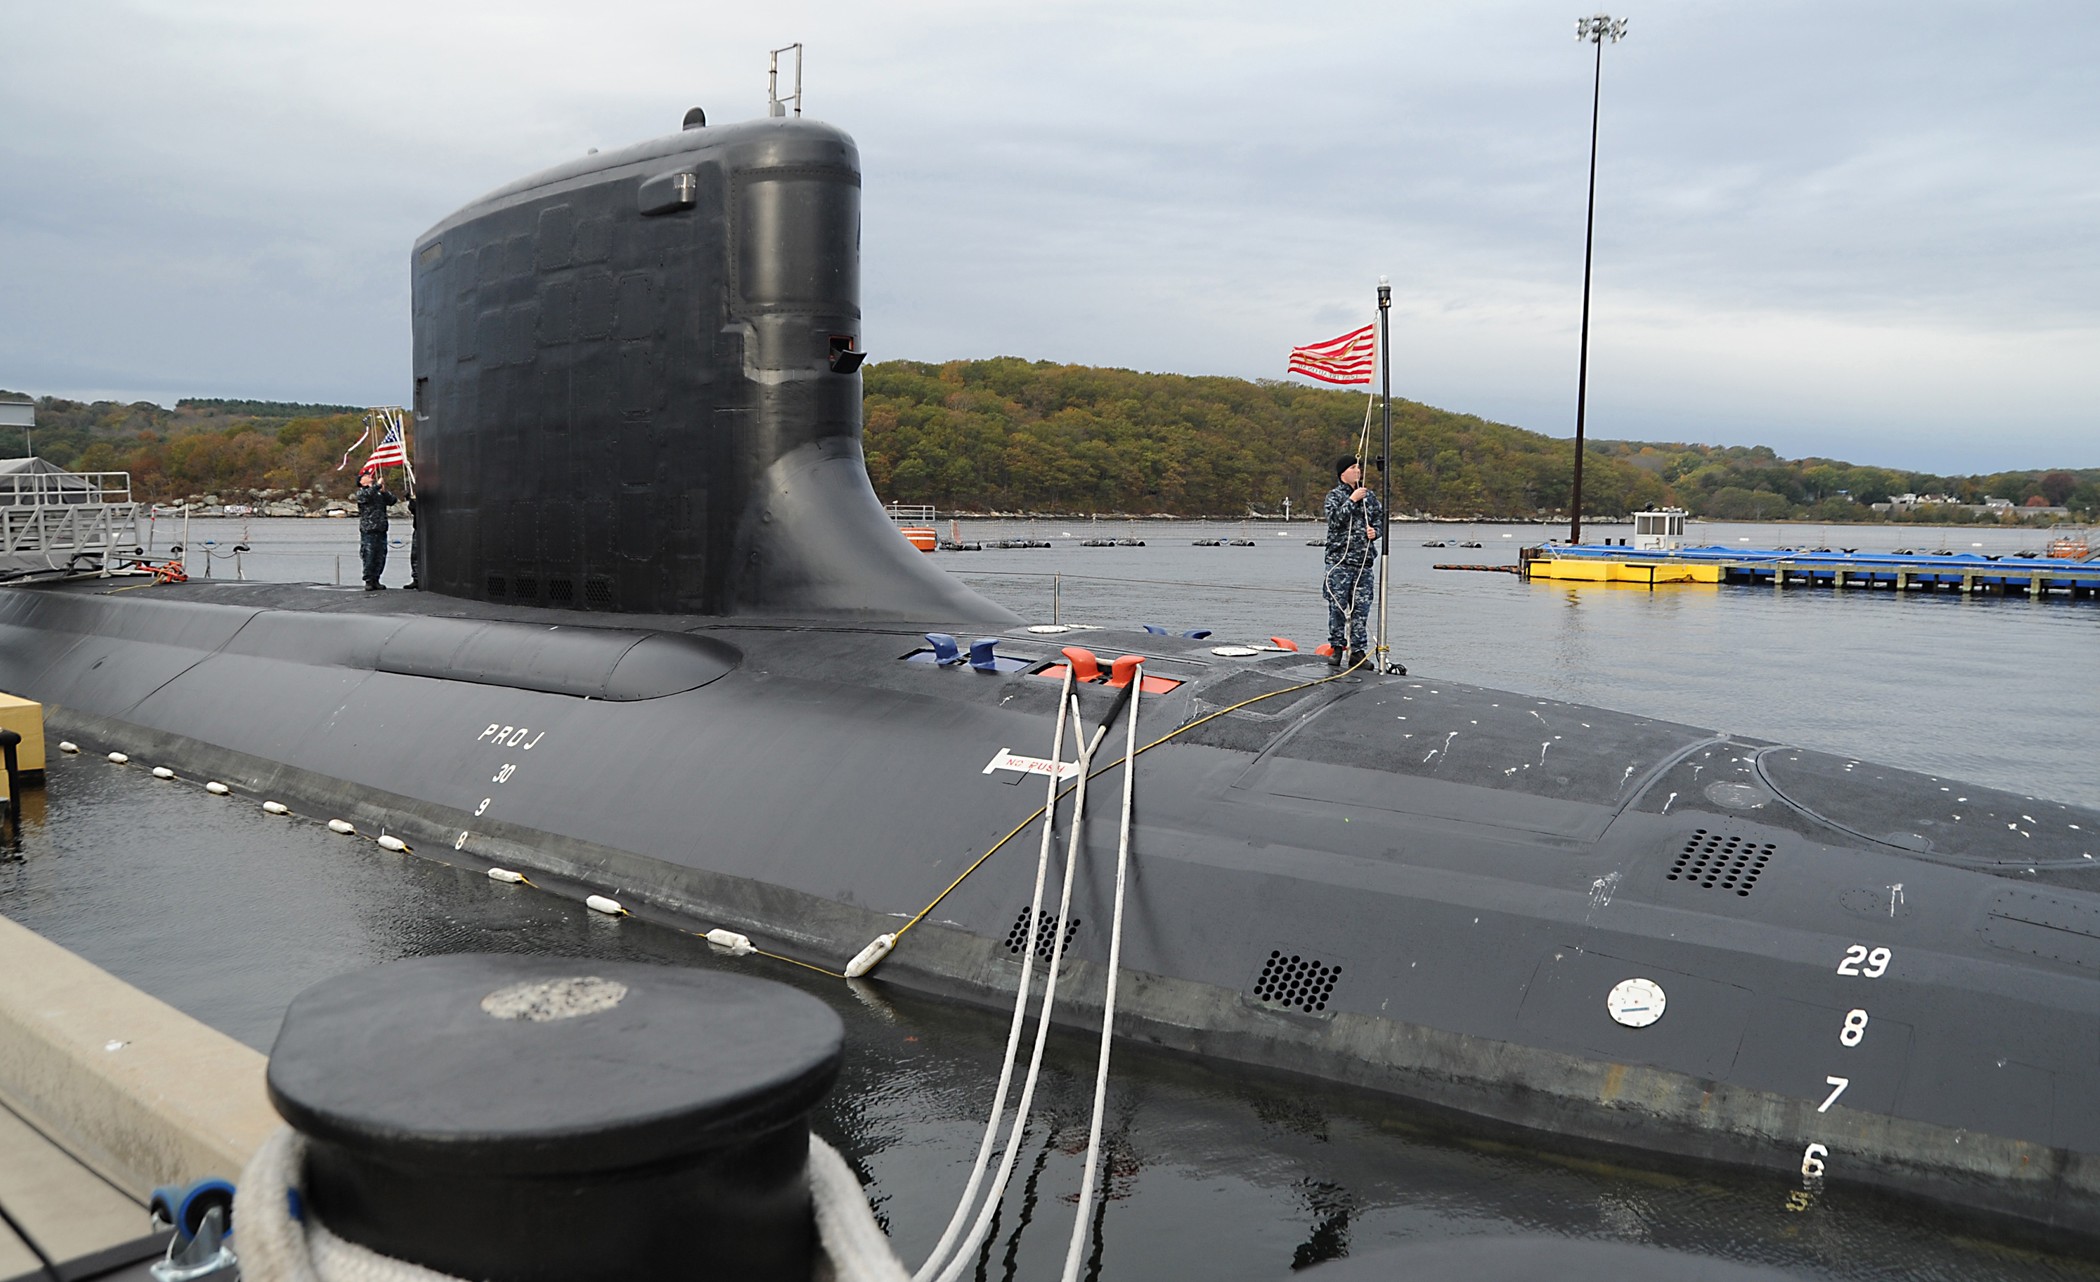 ssn-786 uss illinois virginia class attack submarine us navy 03 subase new london groton connecticut